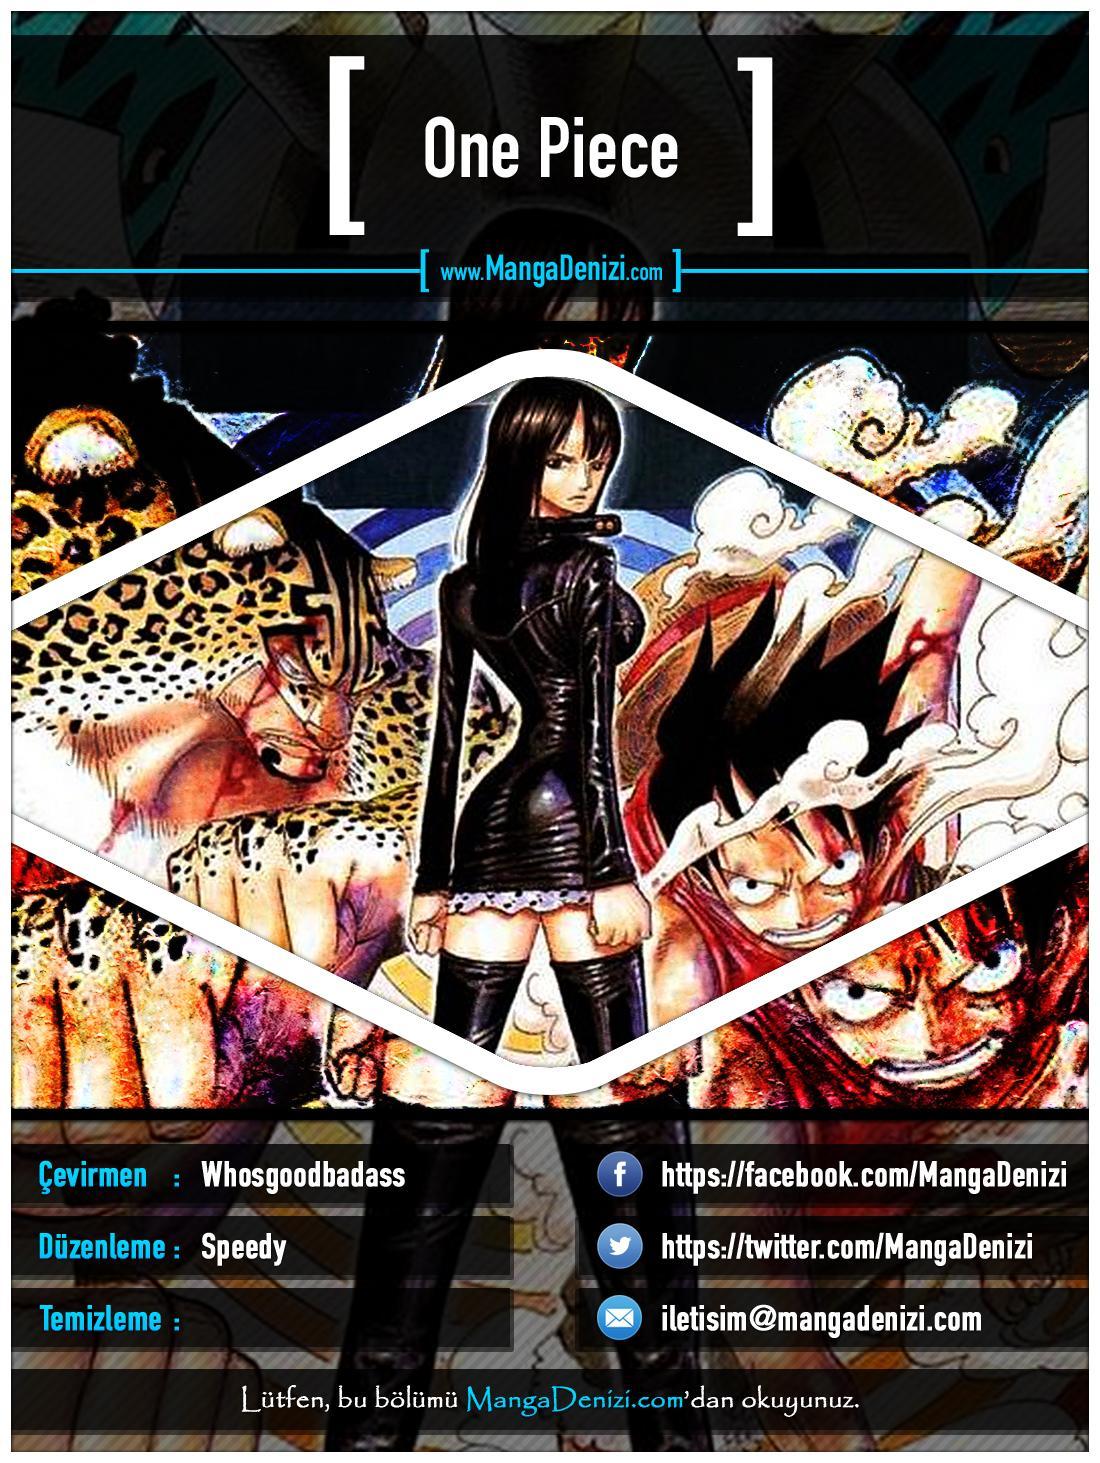 One Piece [Renkli] mangasının 0367 bölümünün 1. sayfasını okuyorsunuz.